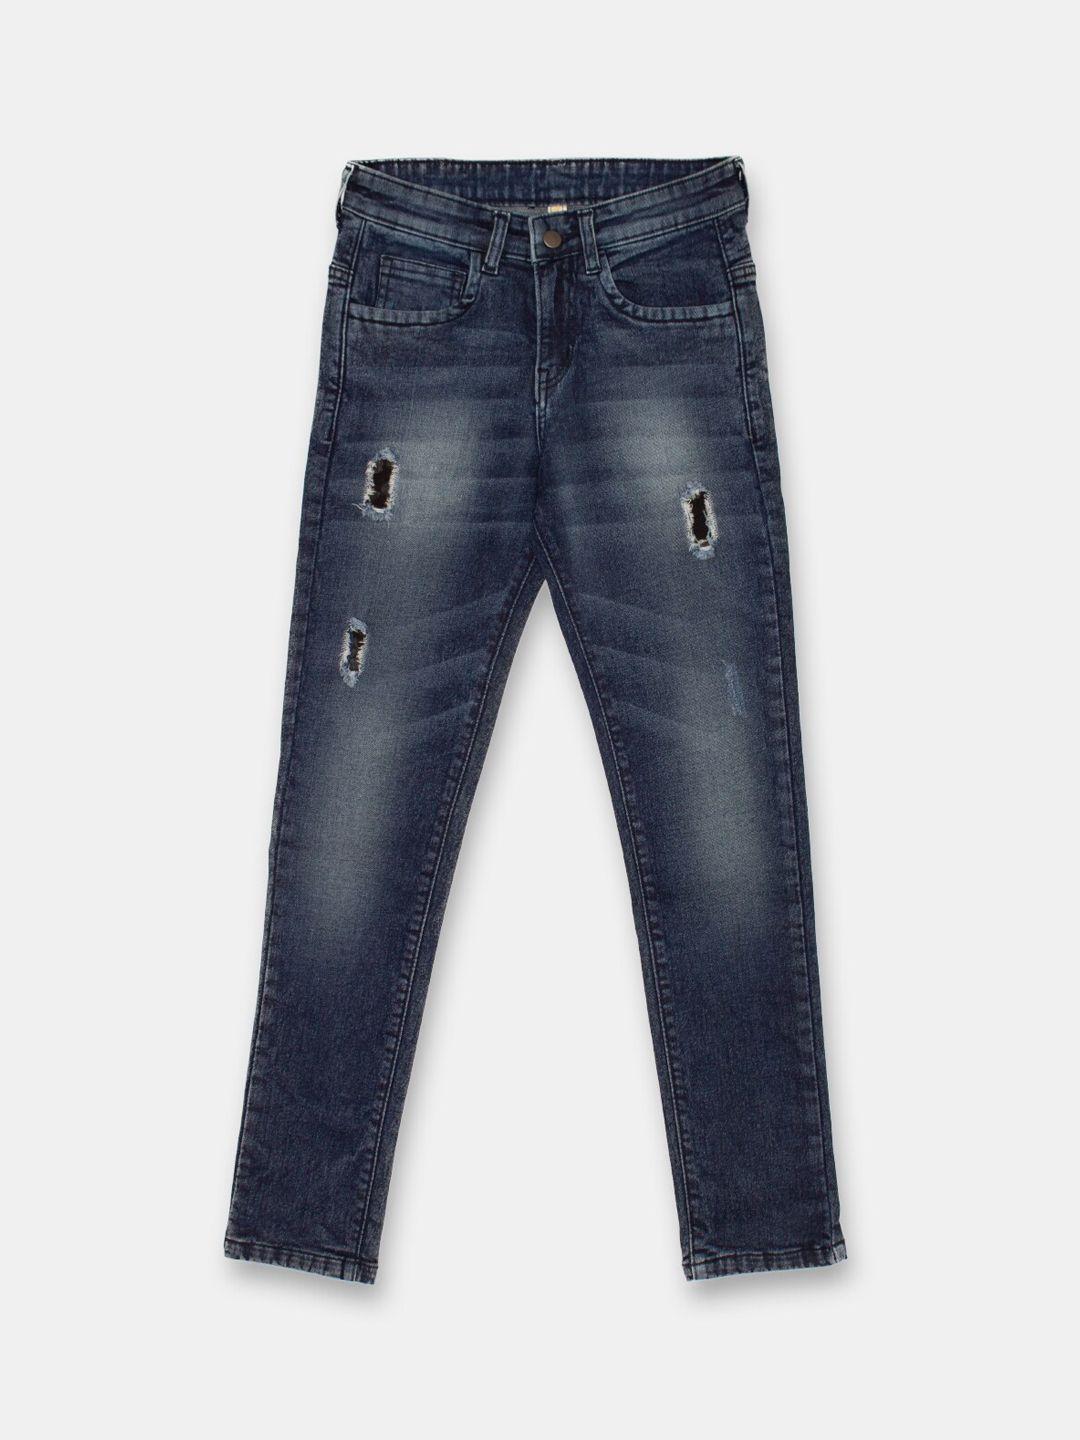 instafab boys navy blue regular fit jeans